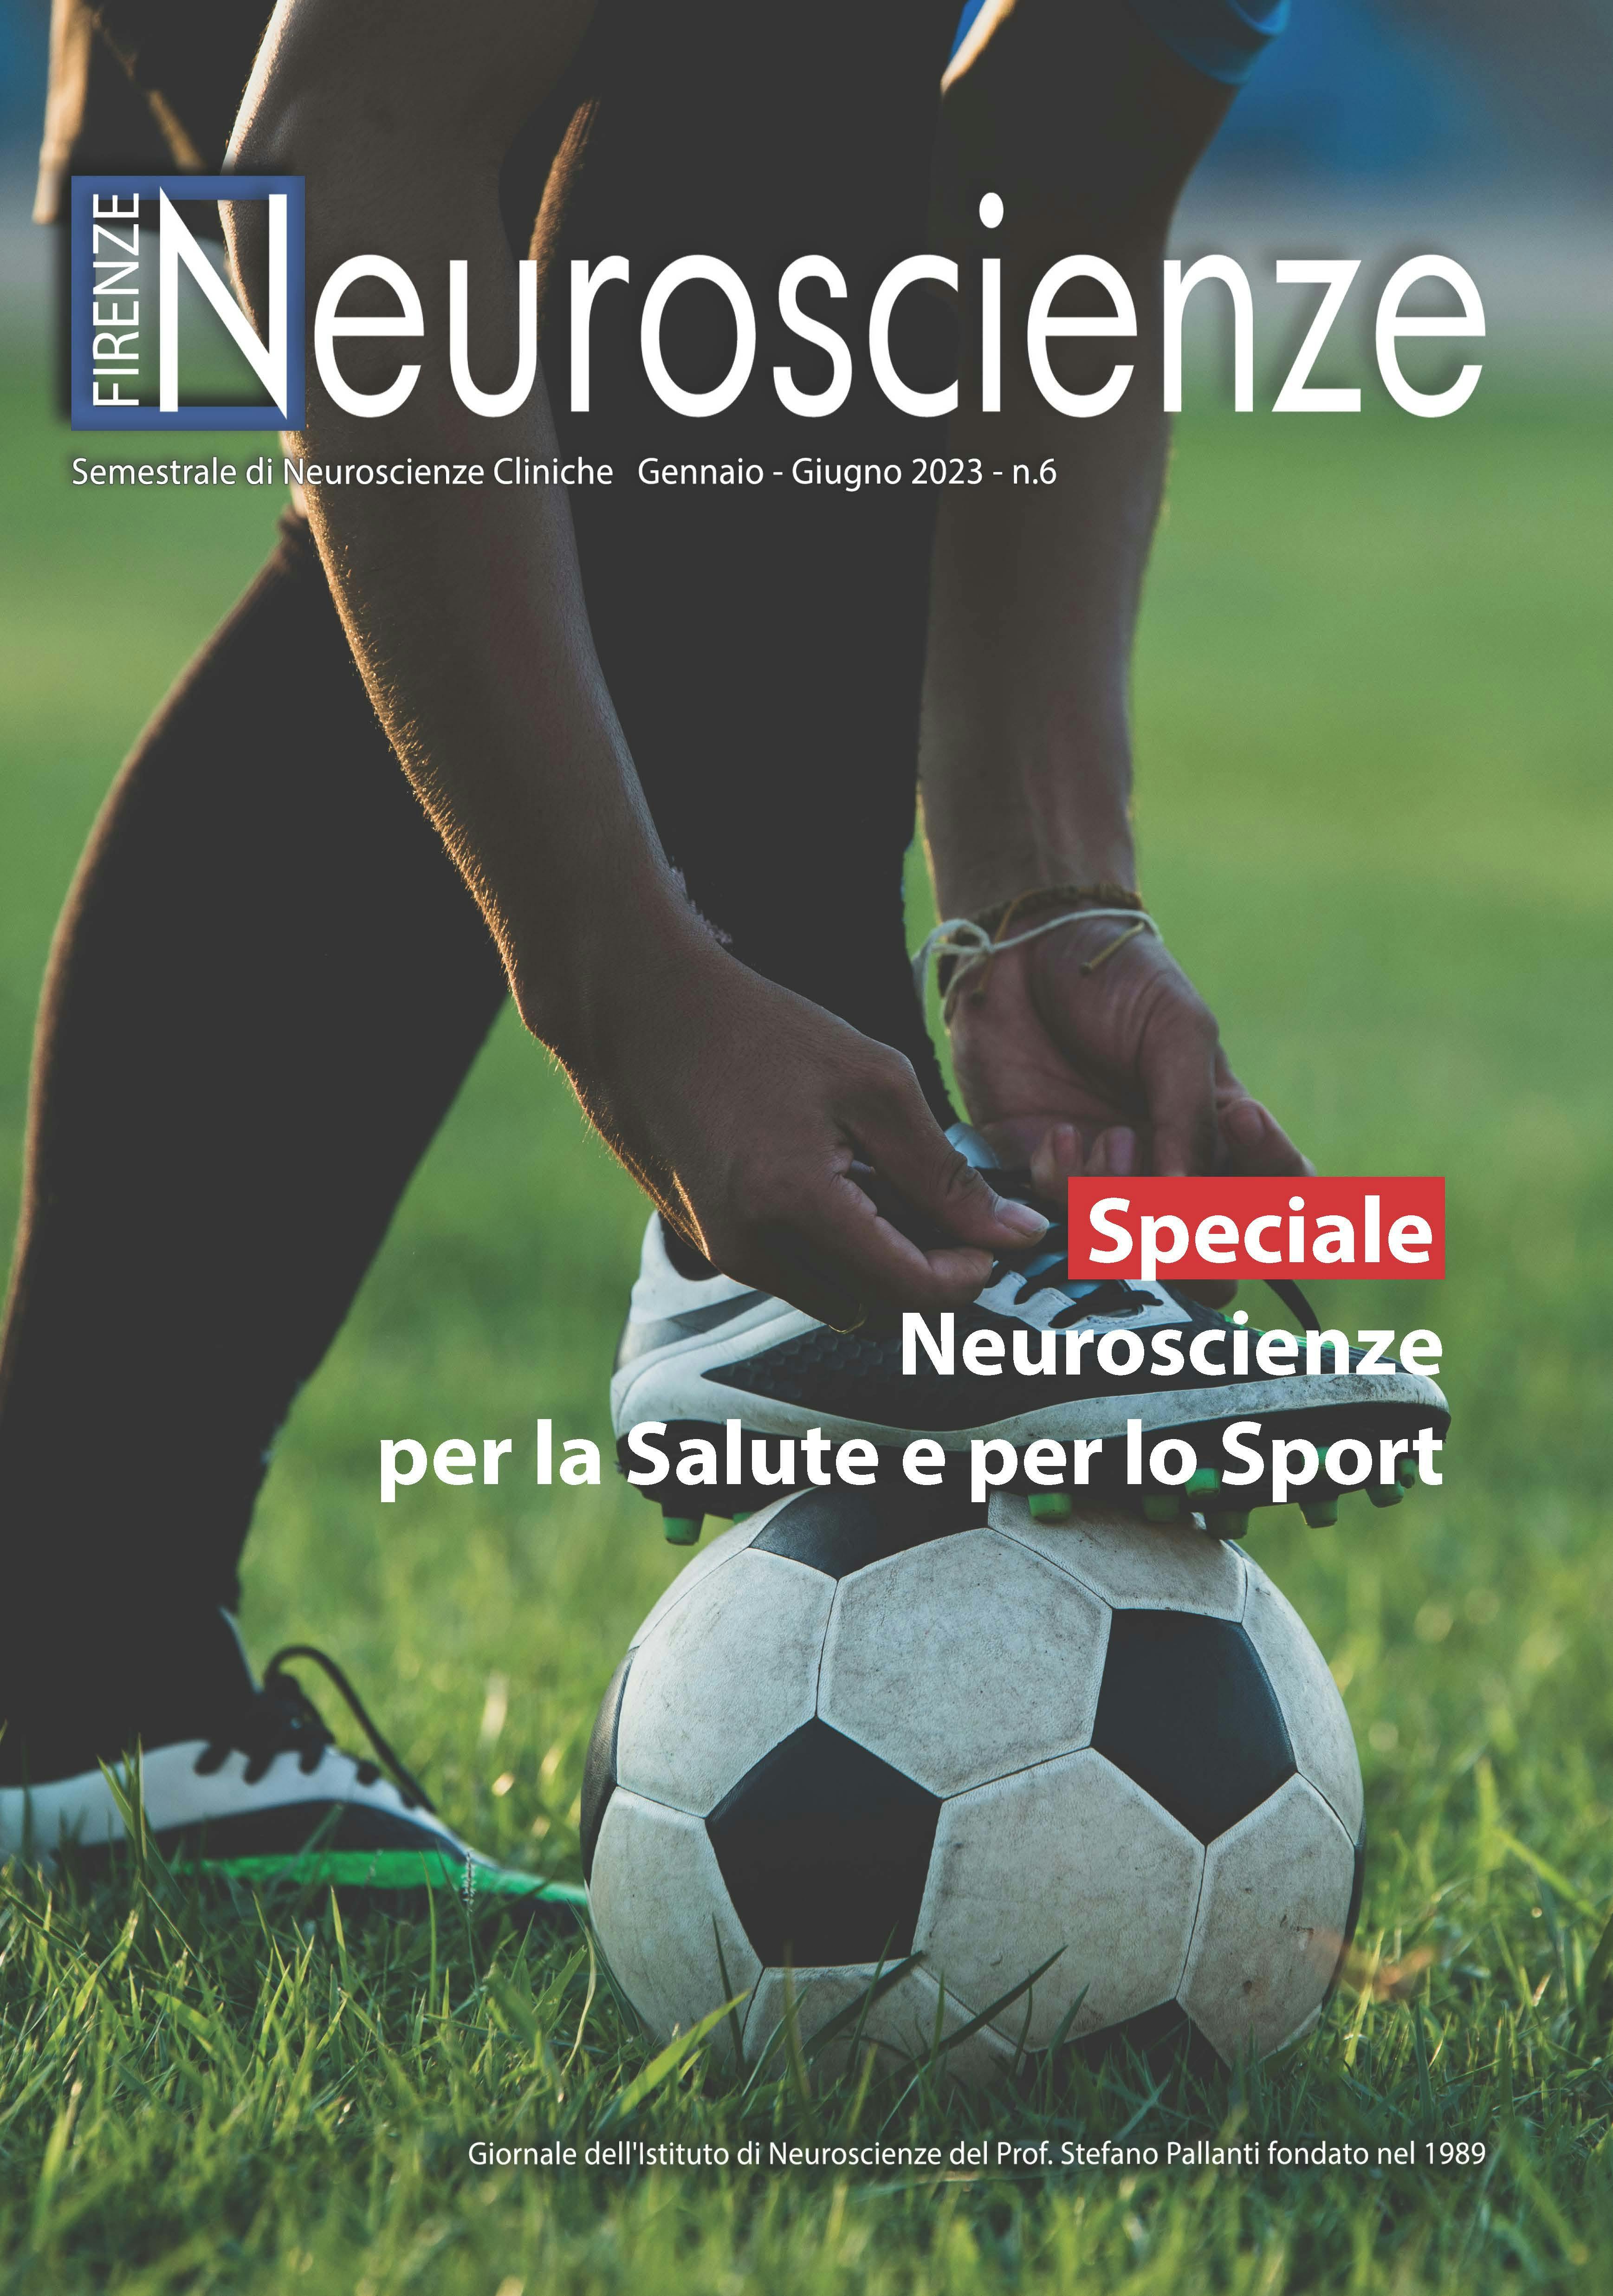 Copertina del sesto numero della rivista Firenze Neuroscienze. TITOLO: Speciale -Neuroscienze per la Salute e per lo Sport. SFONDO: calciatore che si allaccia la scarpa su un pallone da calcio in un campo verde.